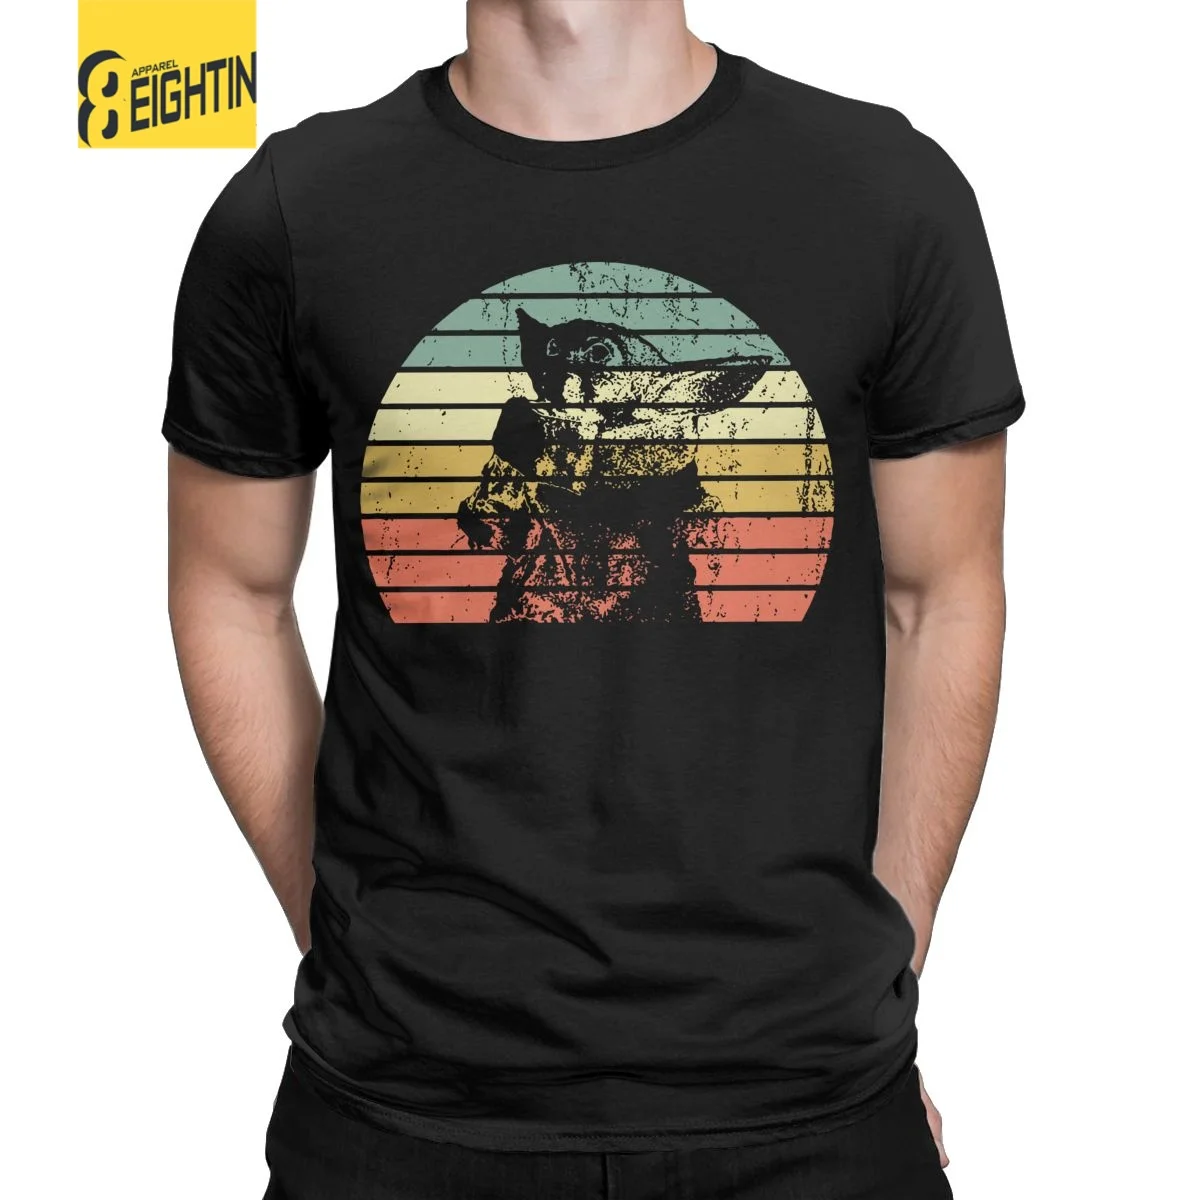 Sunset Star Wars Bebek Yoda Erkek Vintage Unisex Tee Gömlek Kısa Kollu Yuvarlak Boyun Tişört Saf Pamuk Artı Boyutu T Gömlek Giyim